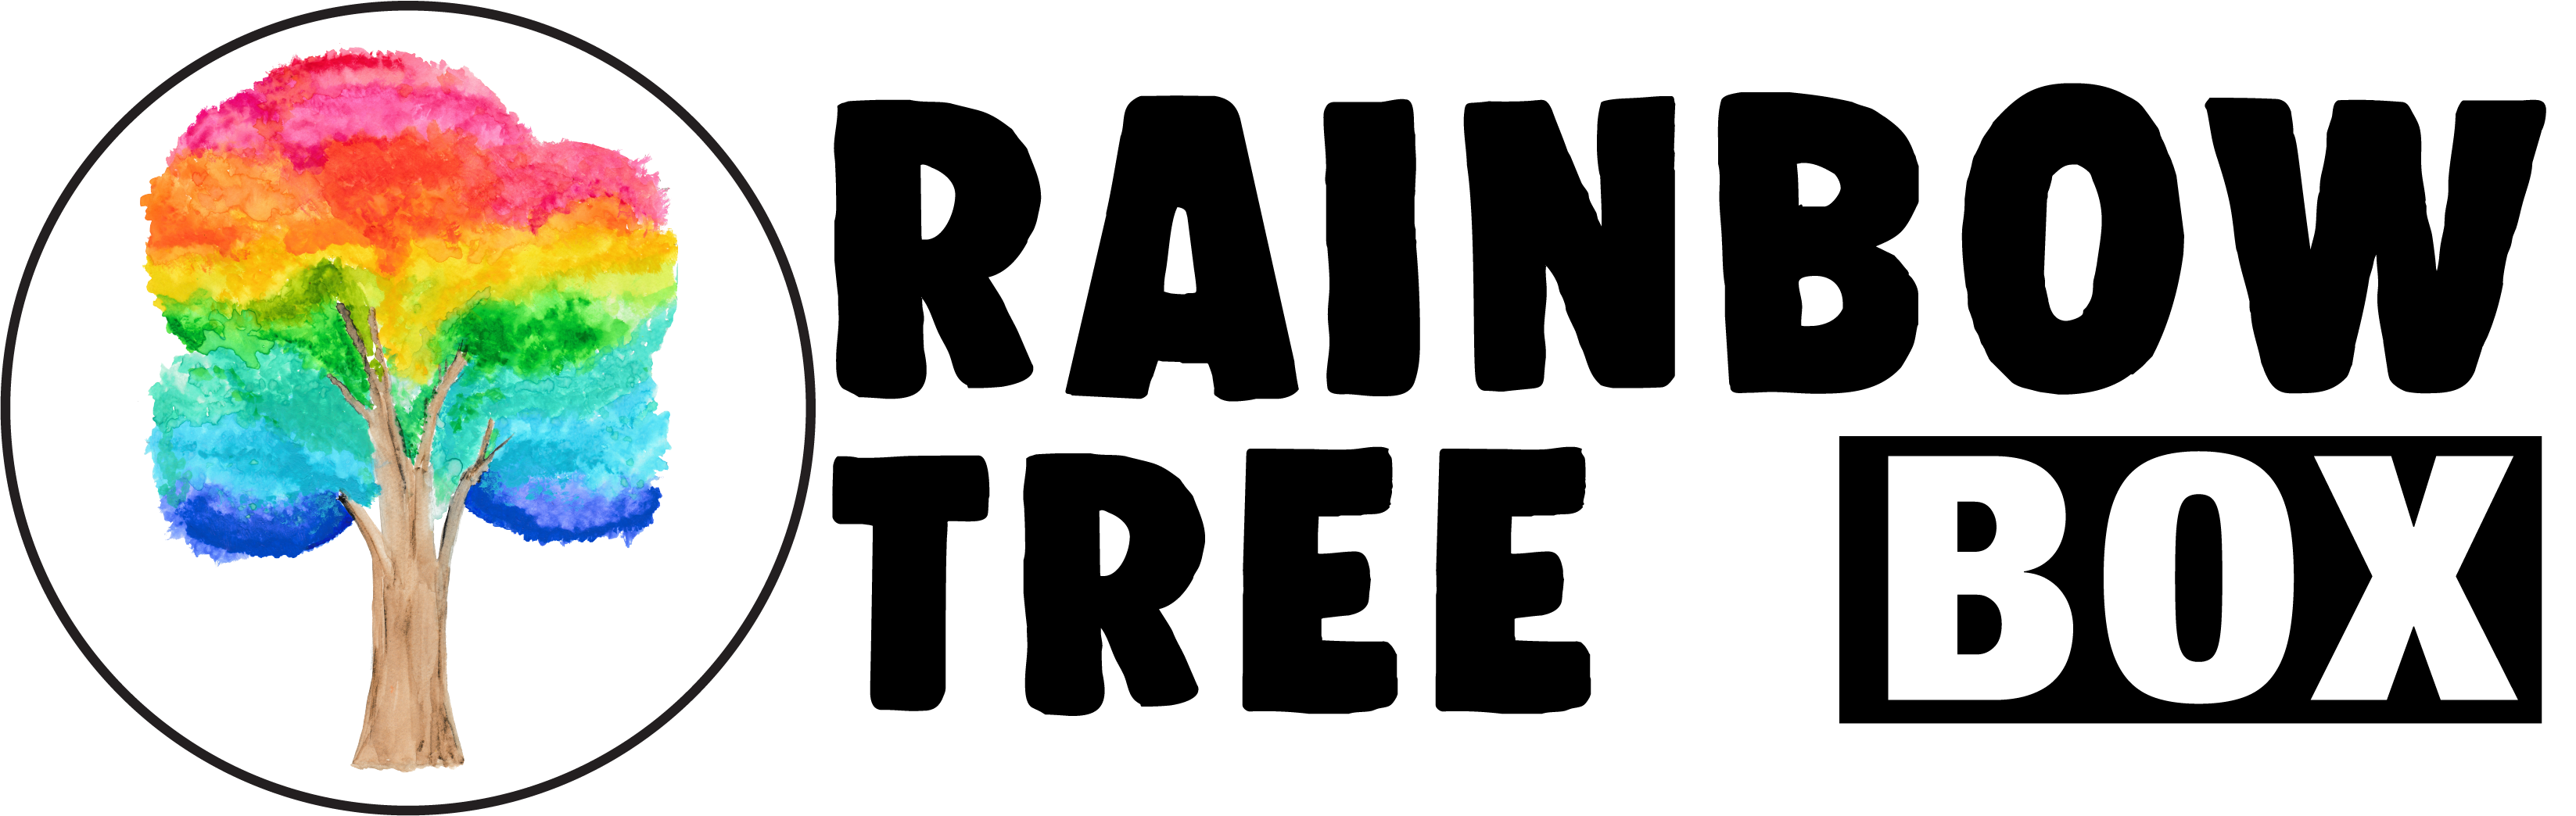 1107-rt-logo-black-on-transparent-16879802991542.png